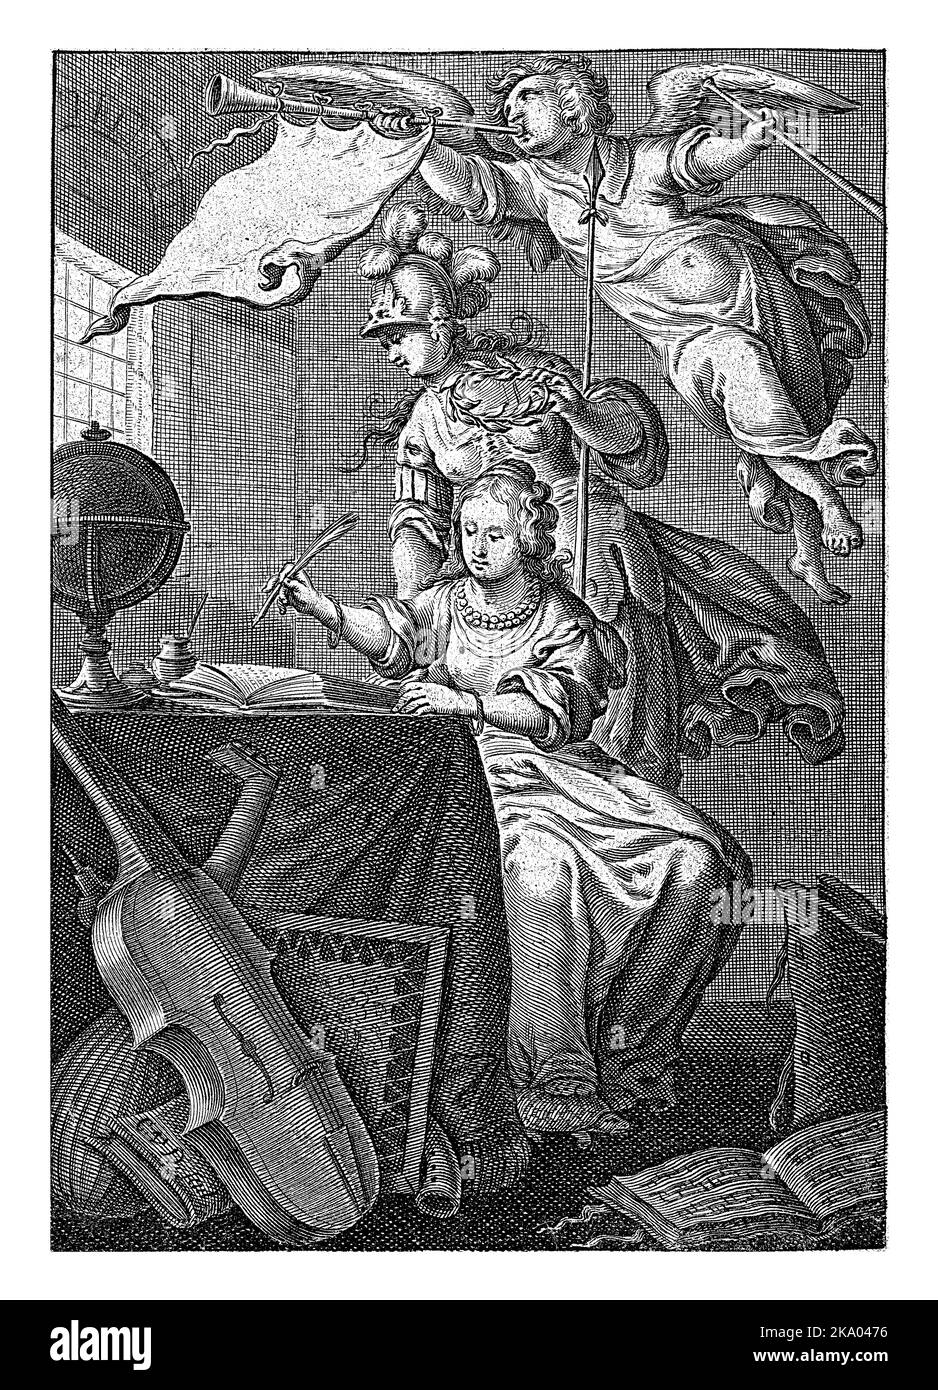 Femme écrit à la table sur laquelle le globe est écrit. Minerva regarde par-dessus son épaule et tient une couronne de Laurier. Le pied de la dame assise repose sur une tur Banque D'Images